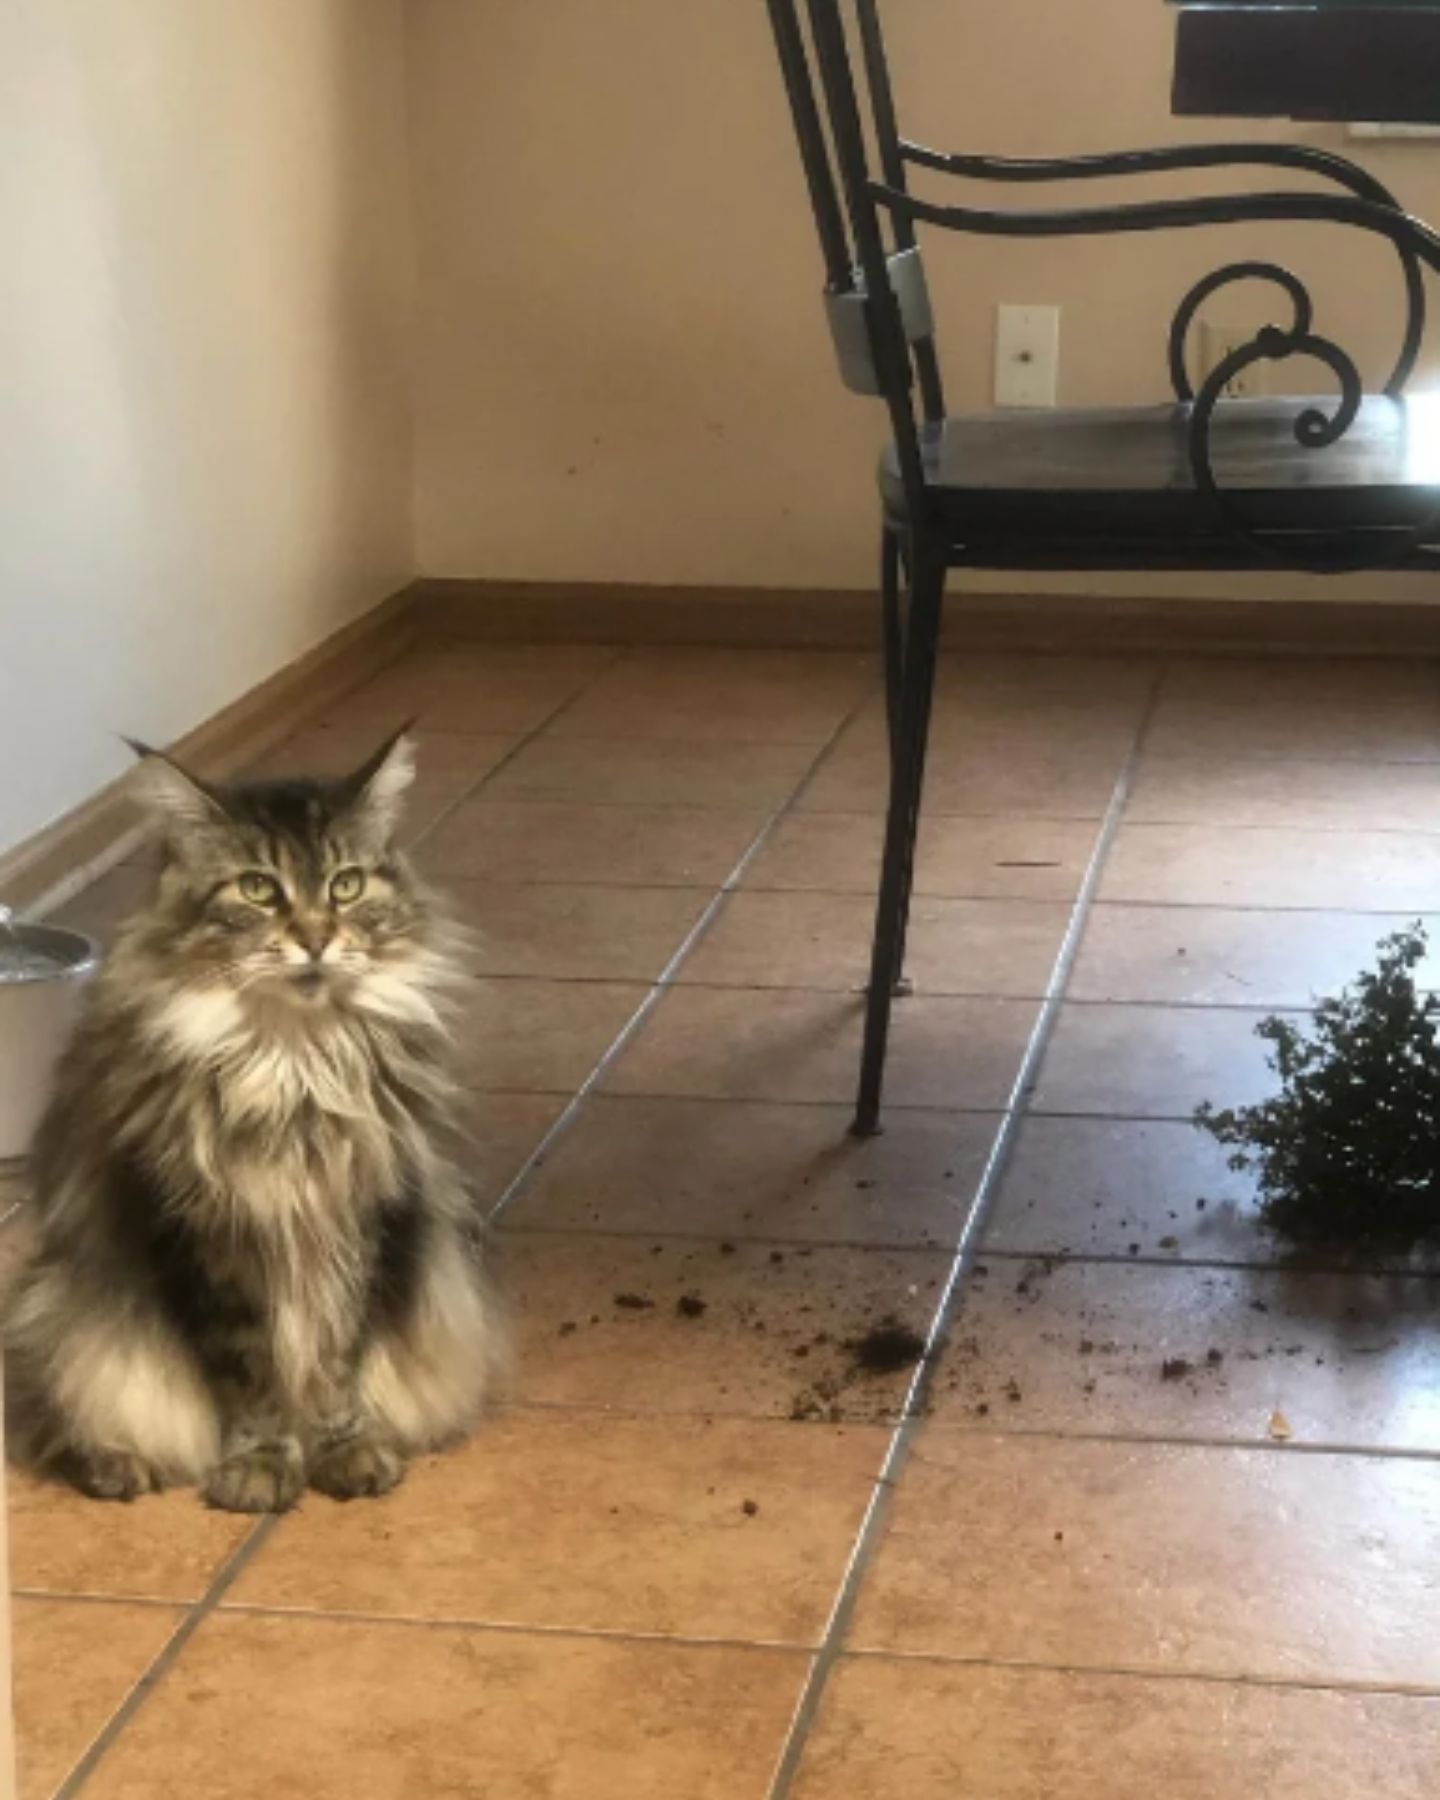 cat and broken plant pot